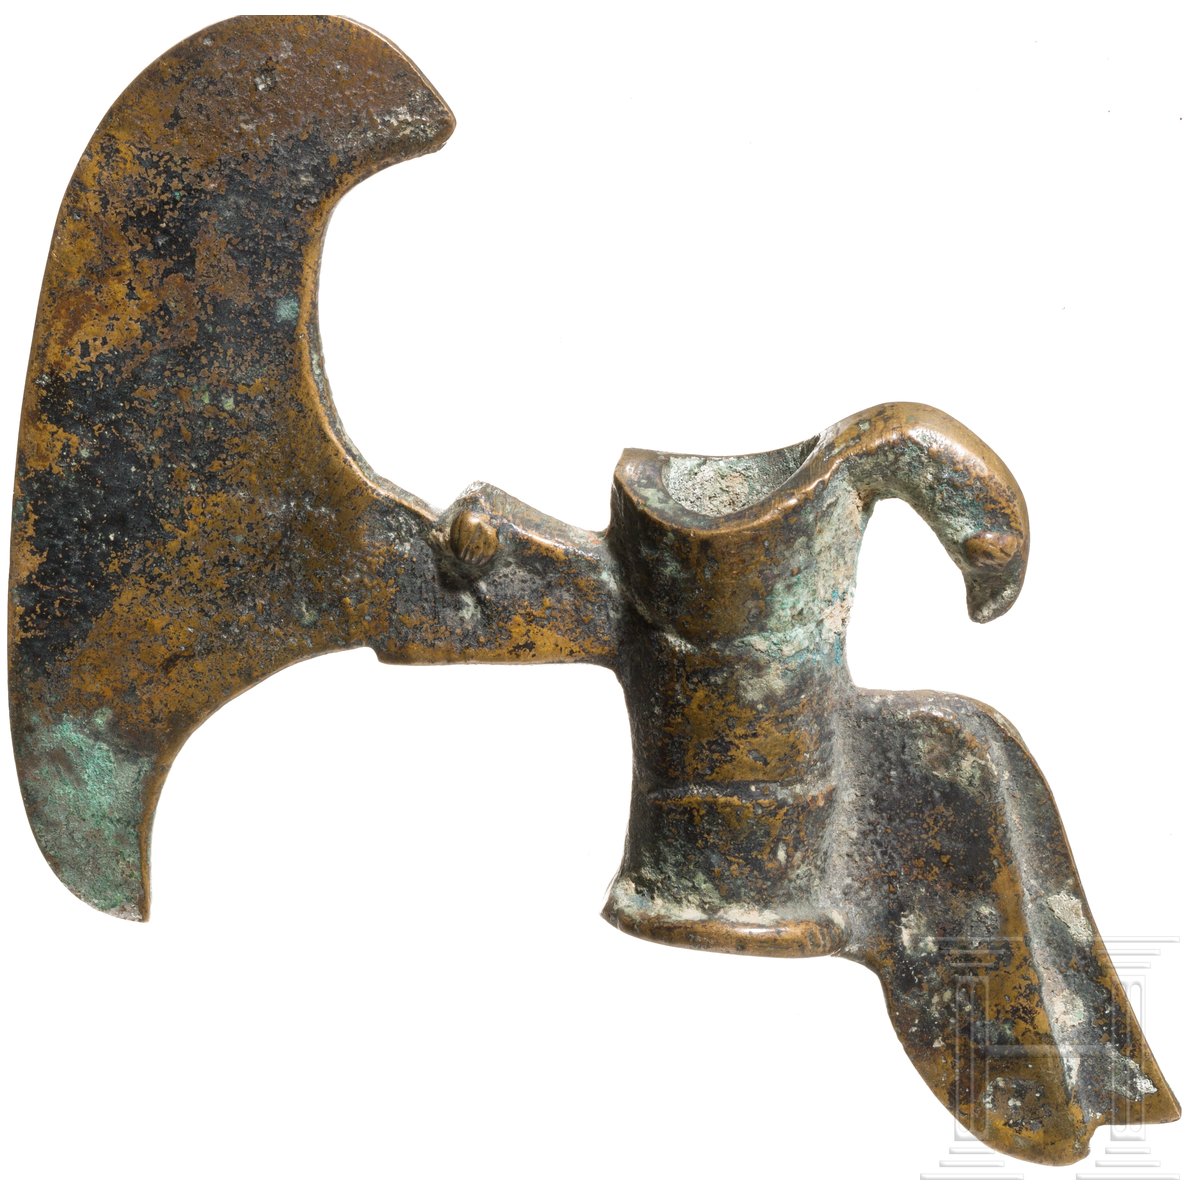 Elamitische Hellebardenaxt mit Vogel, Bronze, Luristan, Westiran, 2000 - 1750 v. Chr. - Image 2 of 3